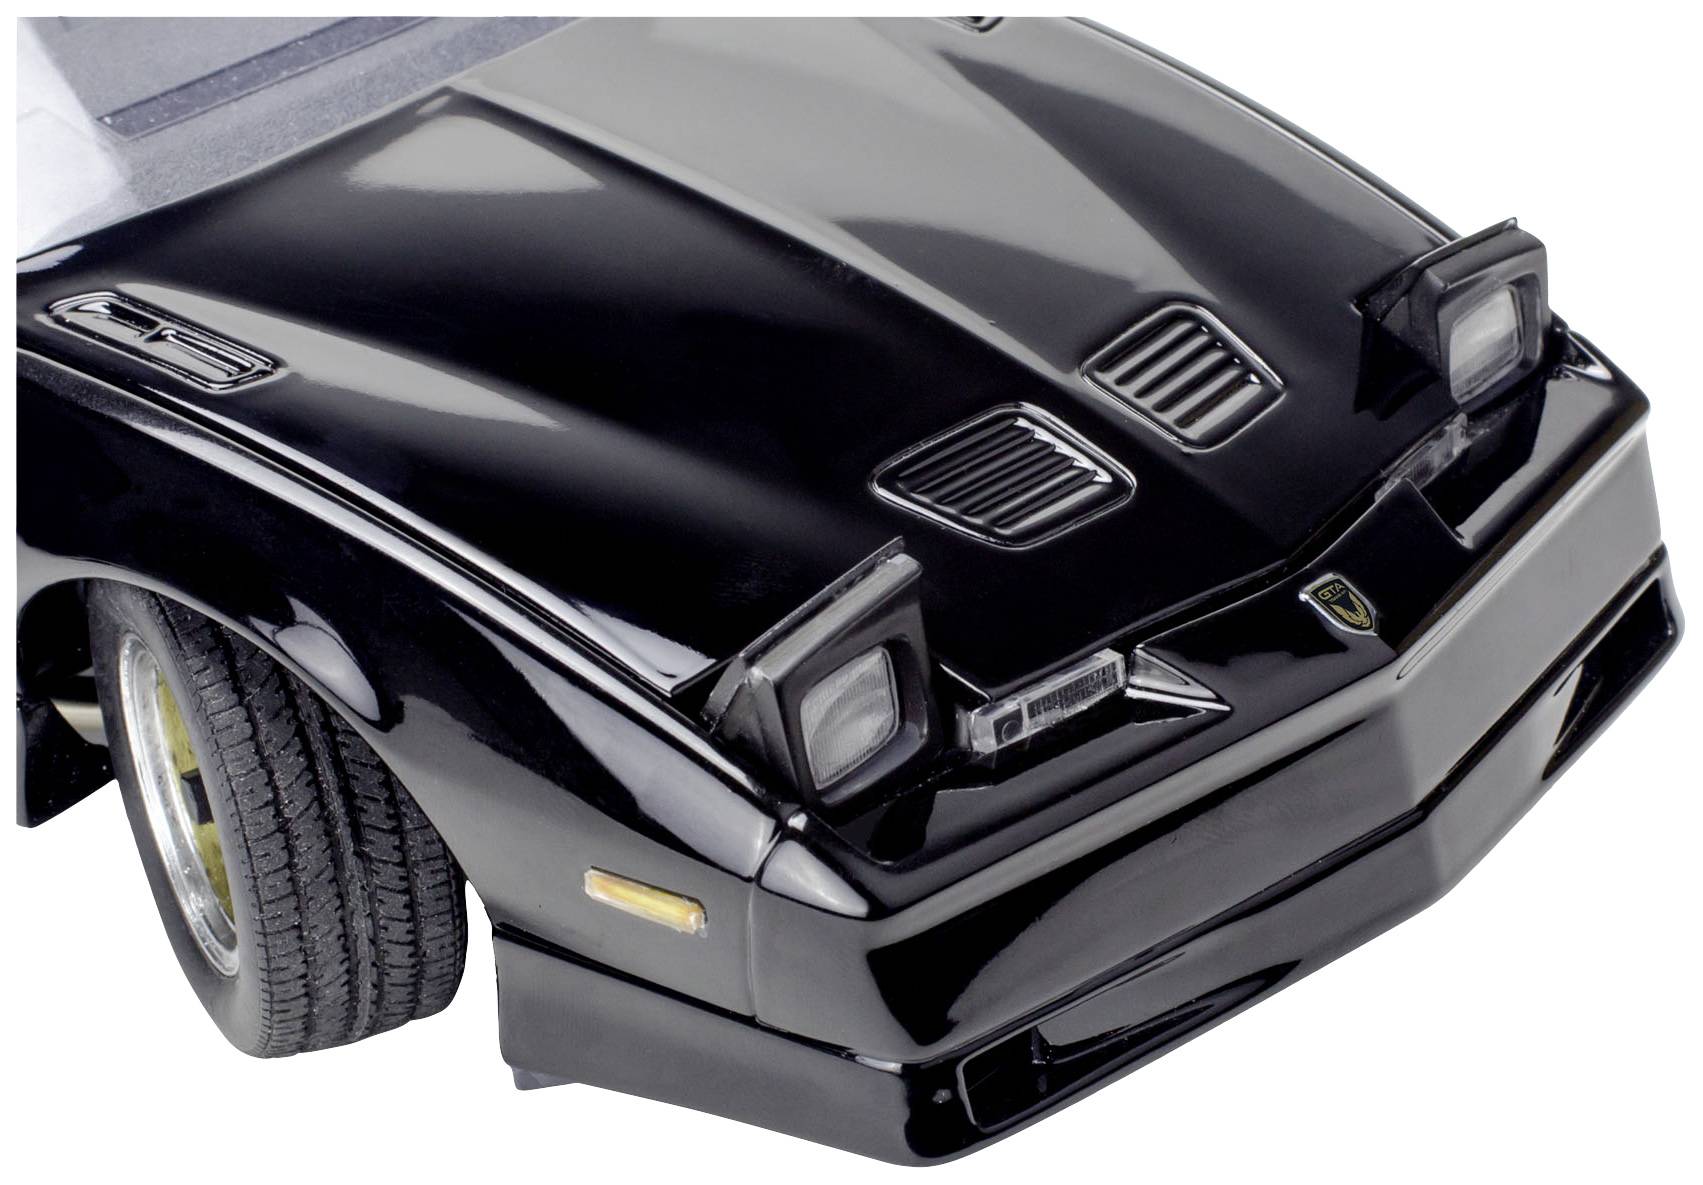 Revell 1987 Pontiac Firebird GTA Car Model Kit - Black (14535) for sale  online